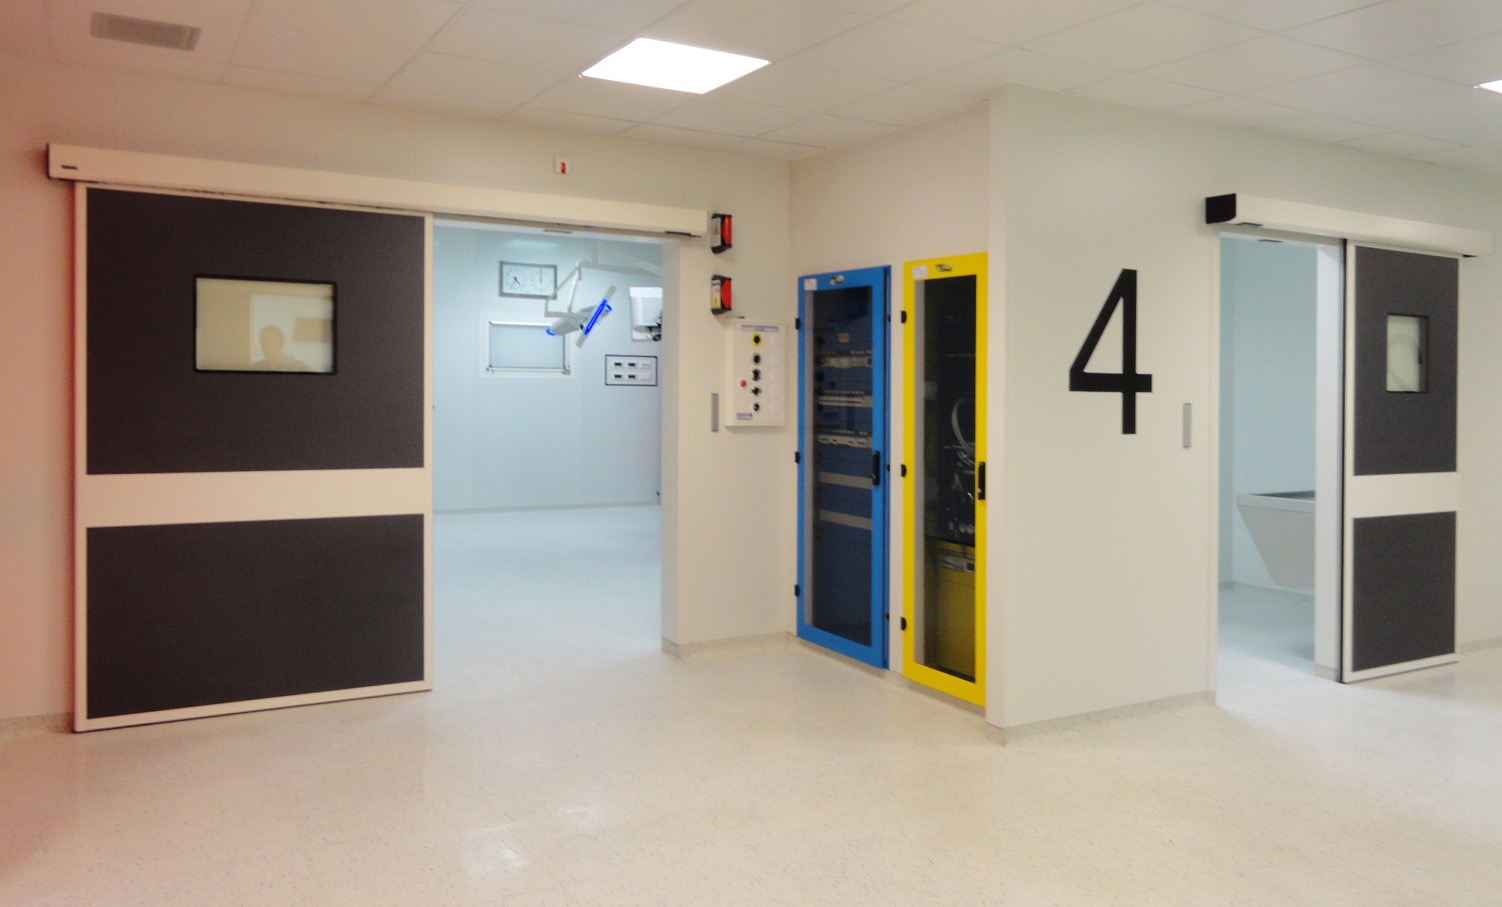 EVH-Porte per ospedali automatiche